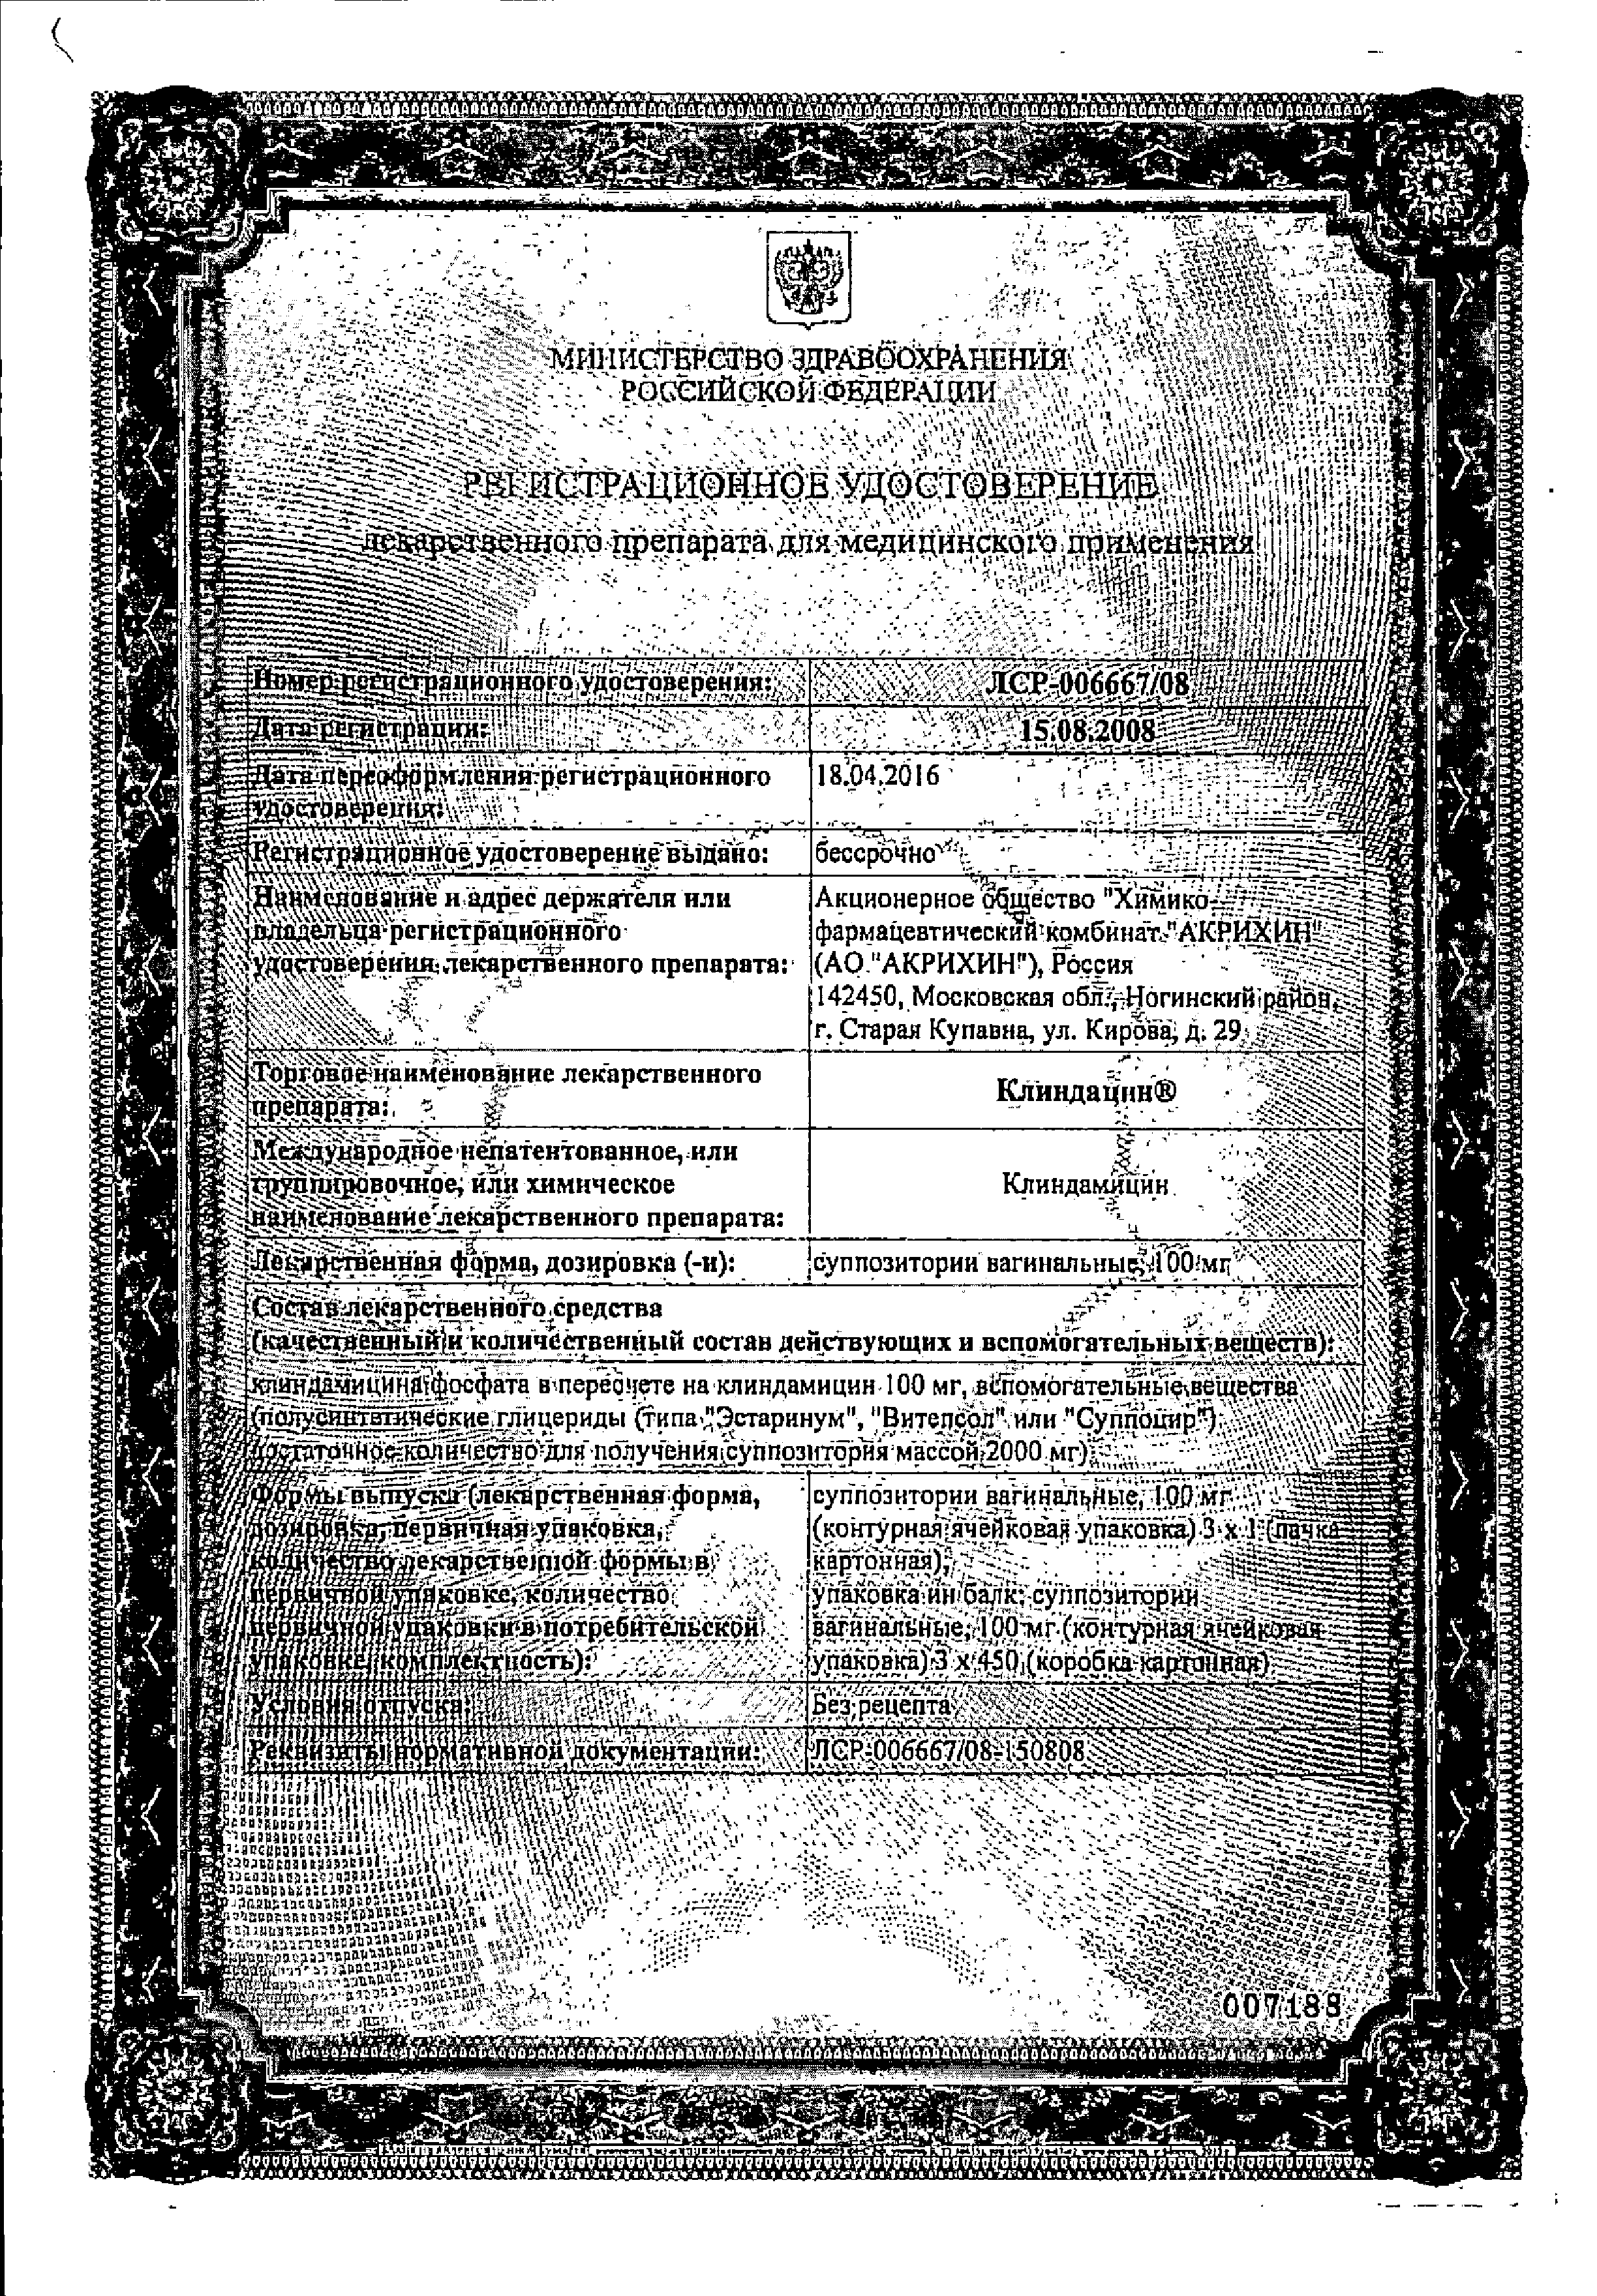 Клиндацин сертификат